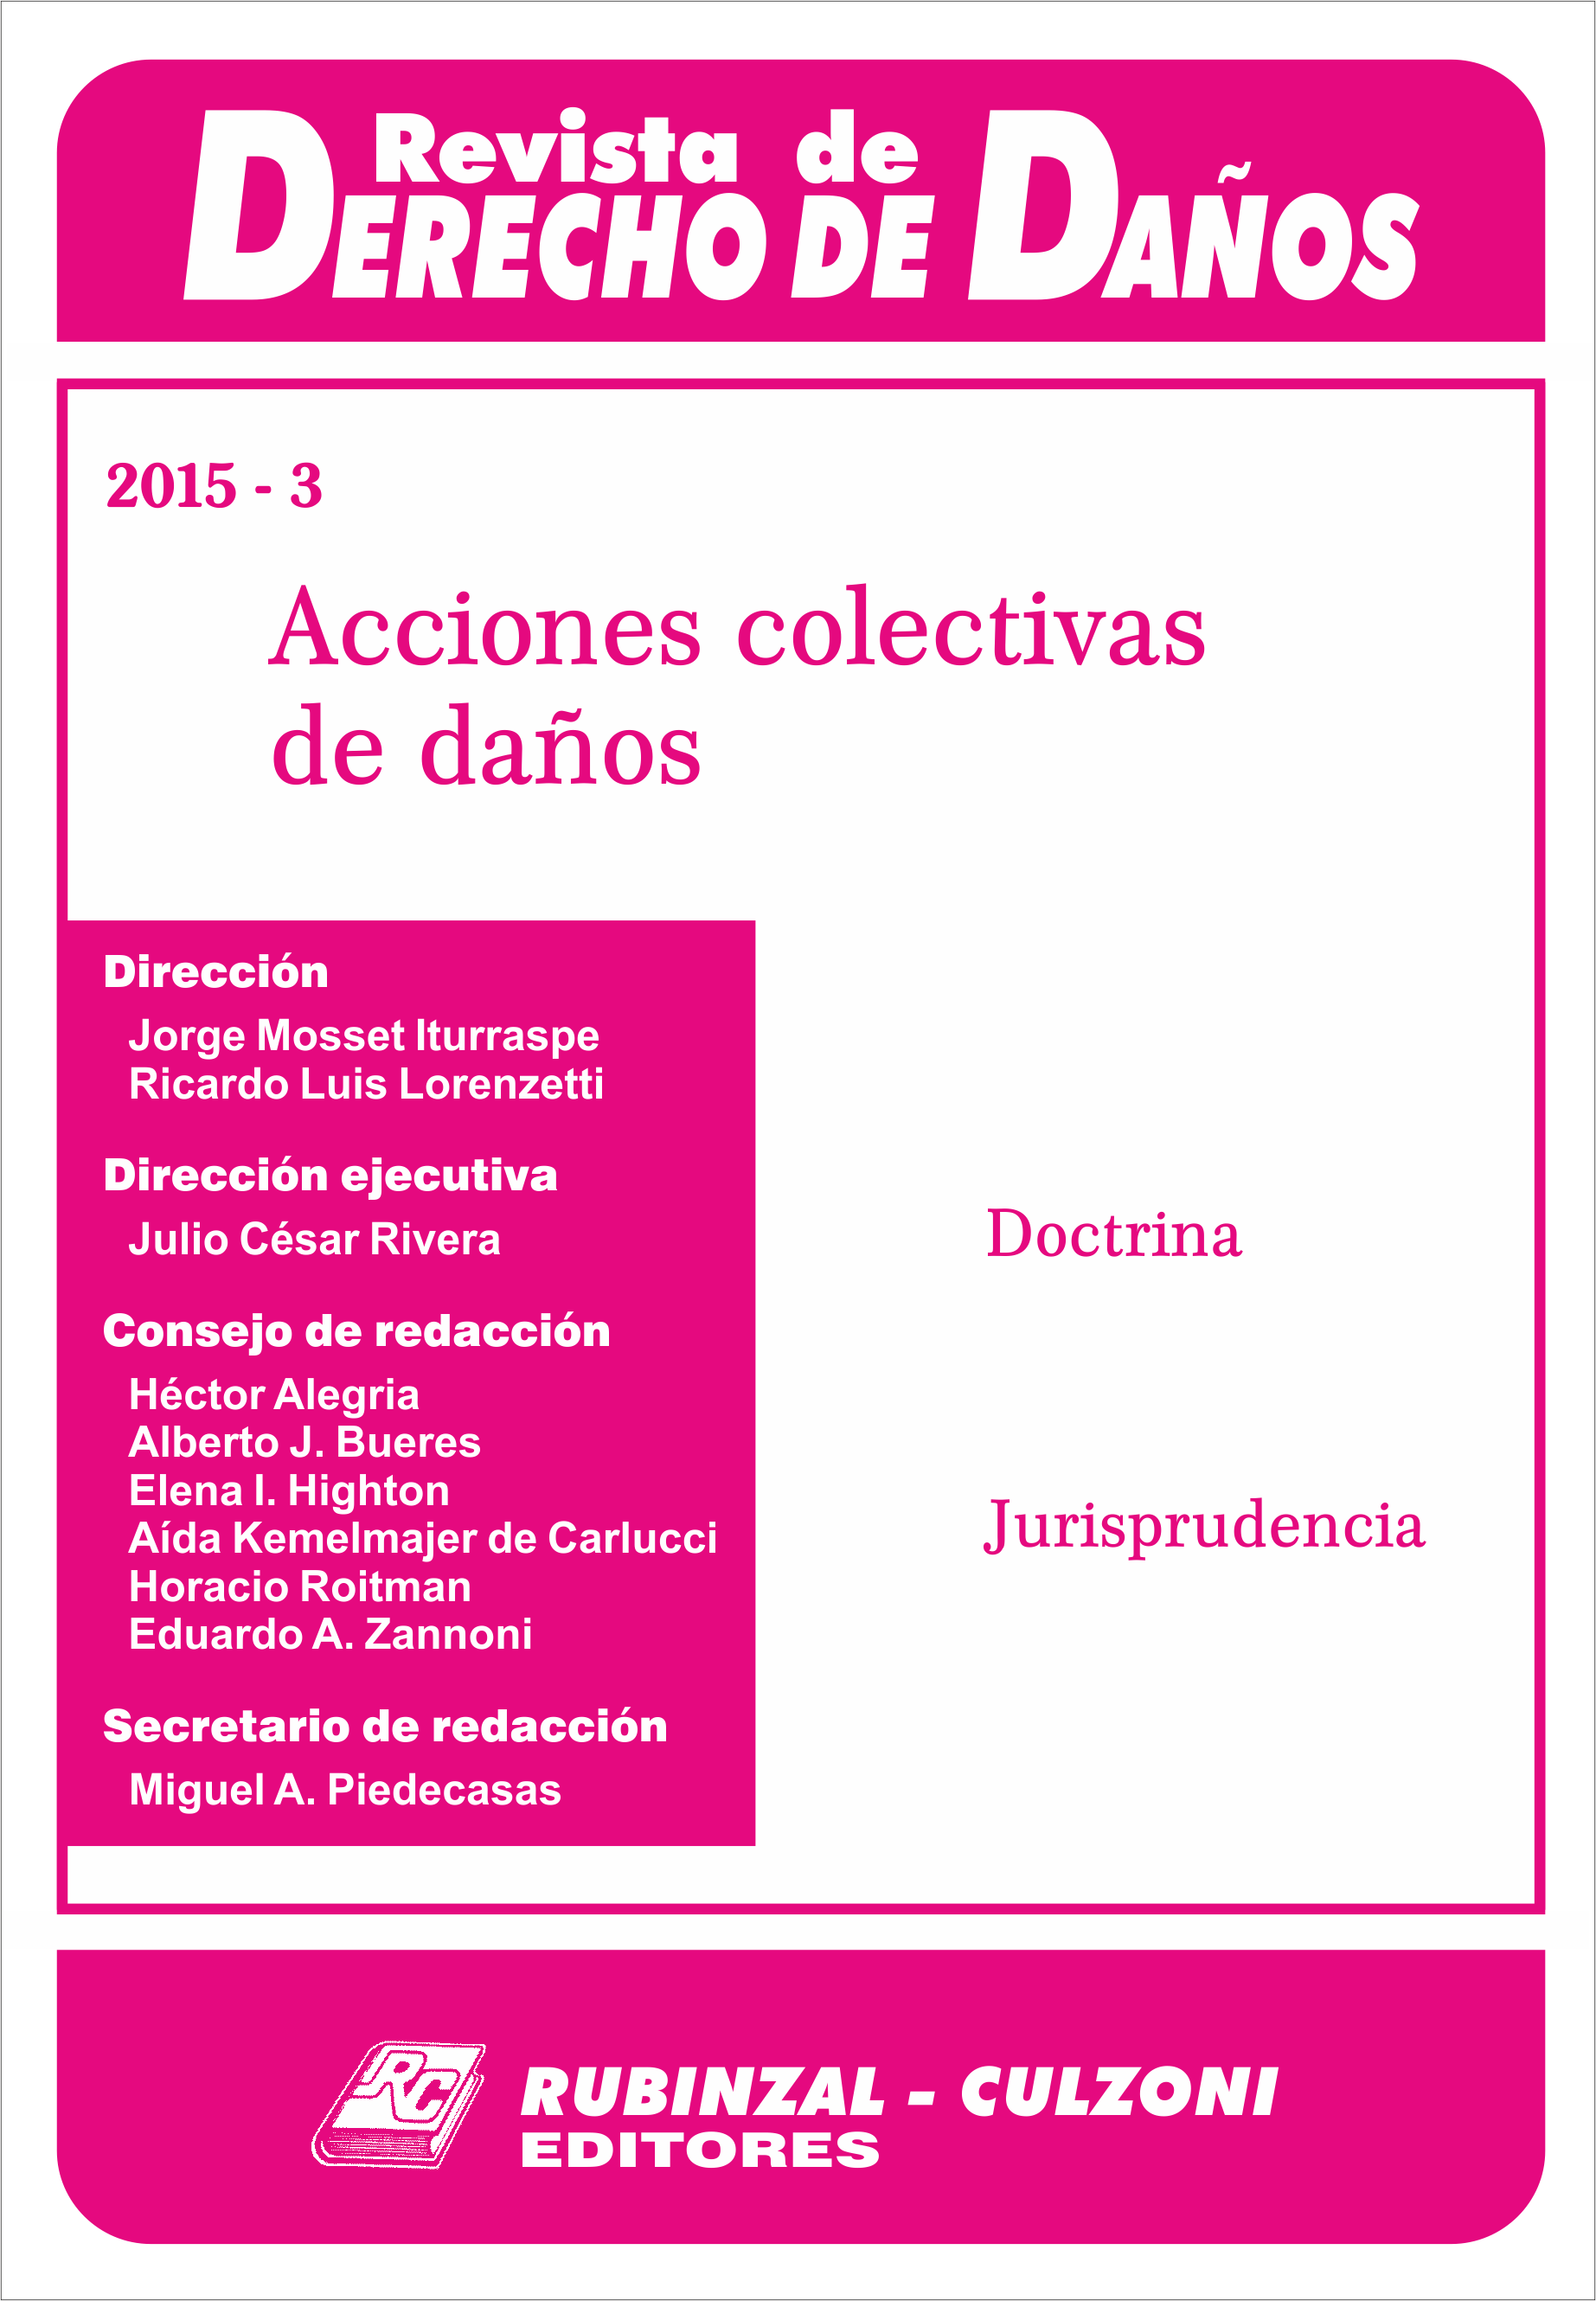 Revista de Derecho de Daños - Acciones colectivas de daños.